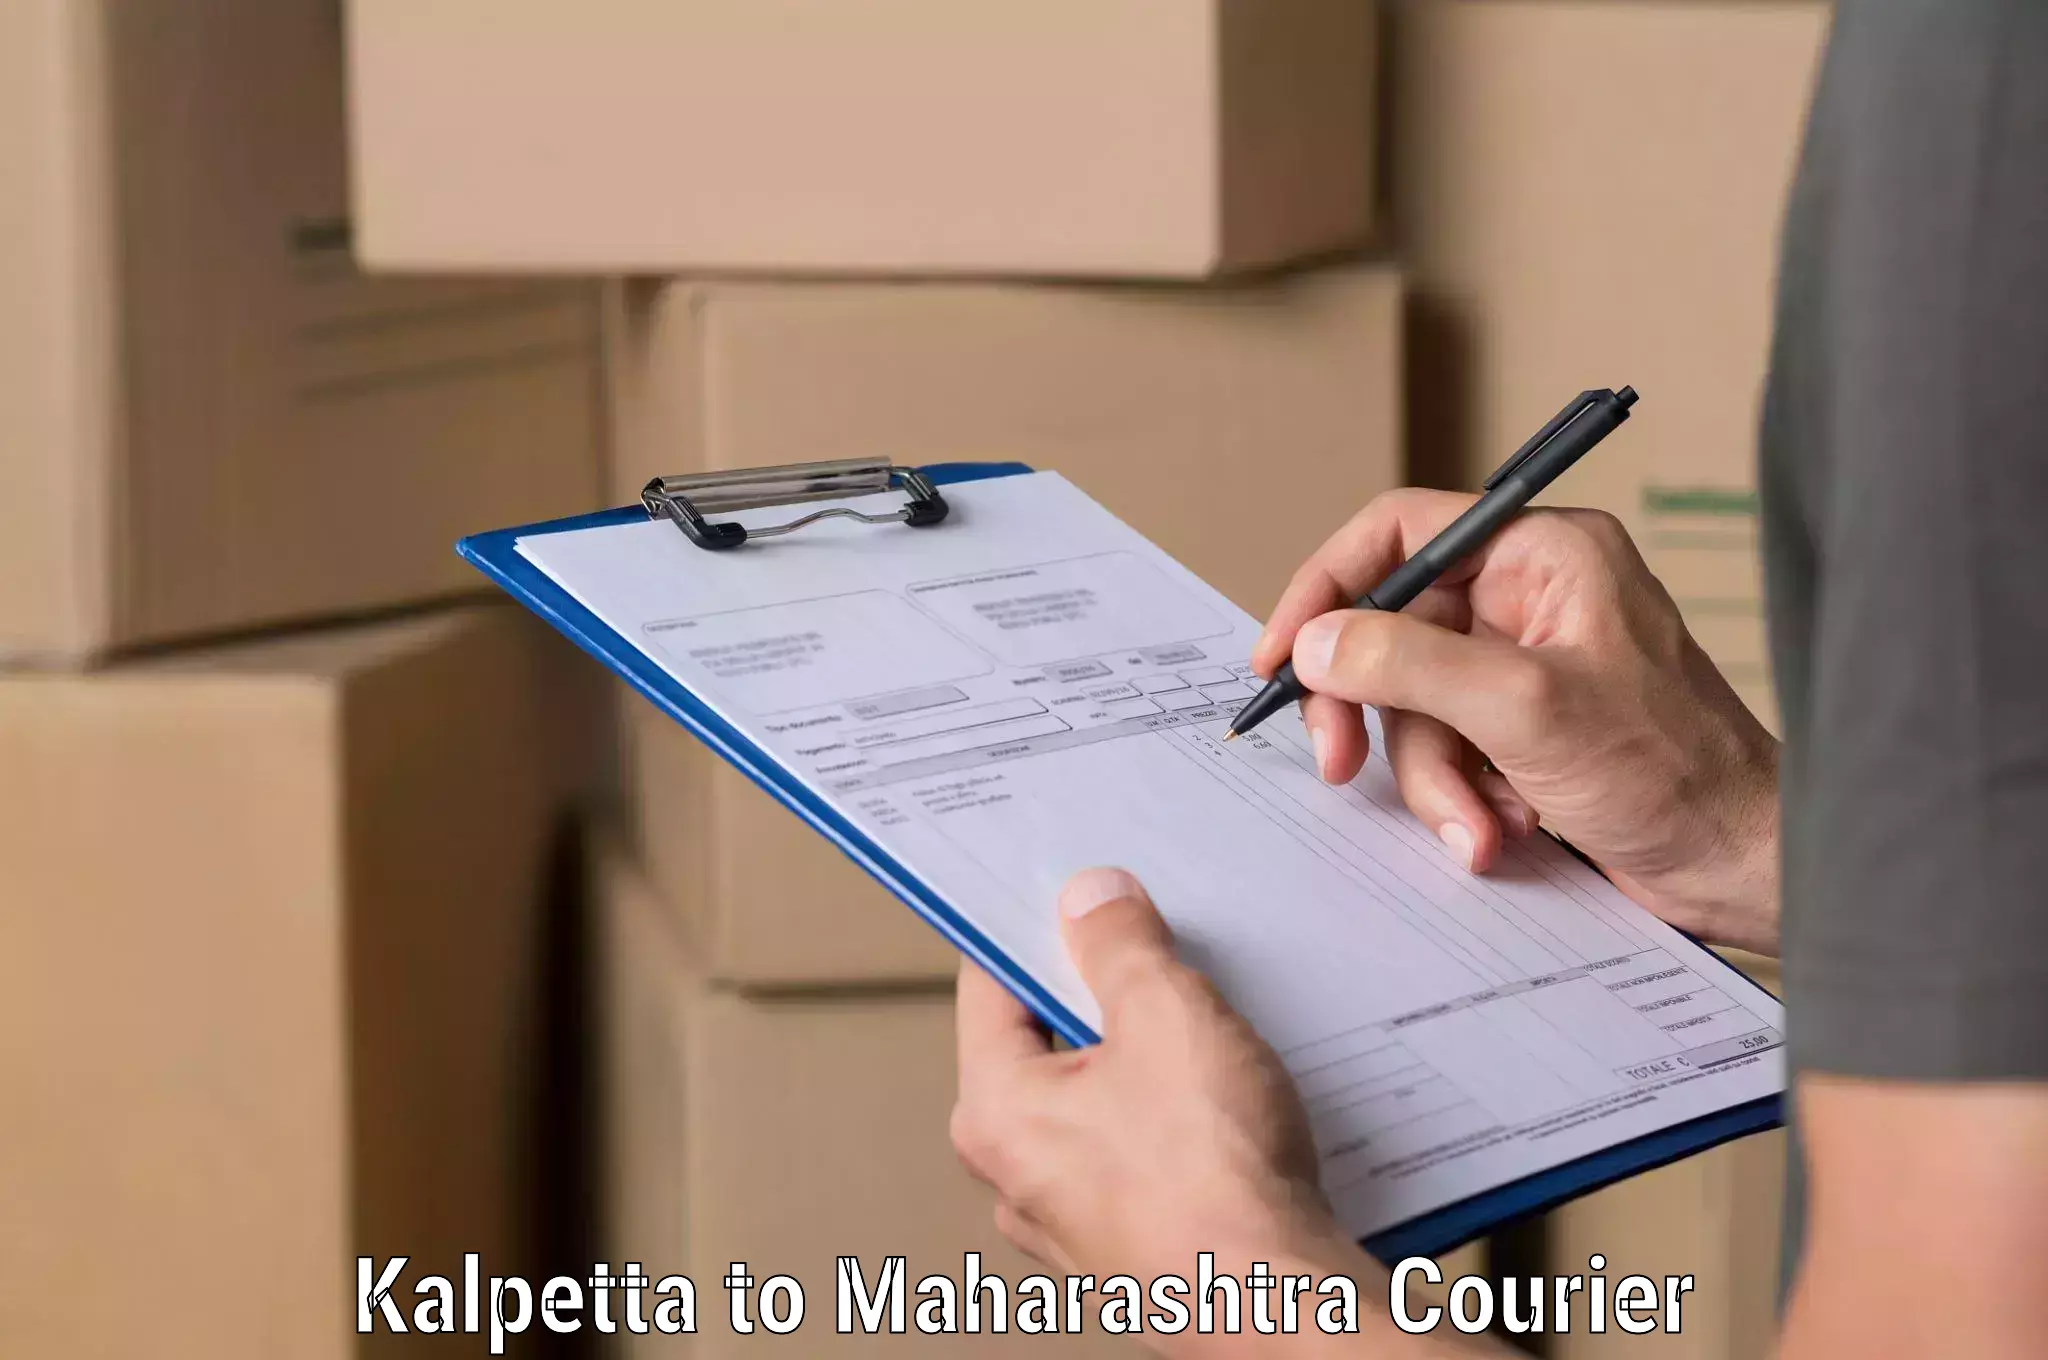 Efficient shipping operations Kalpetta to Maharashtra